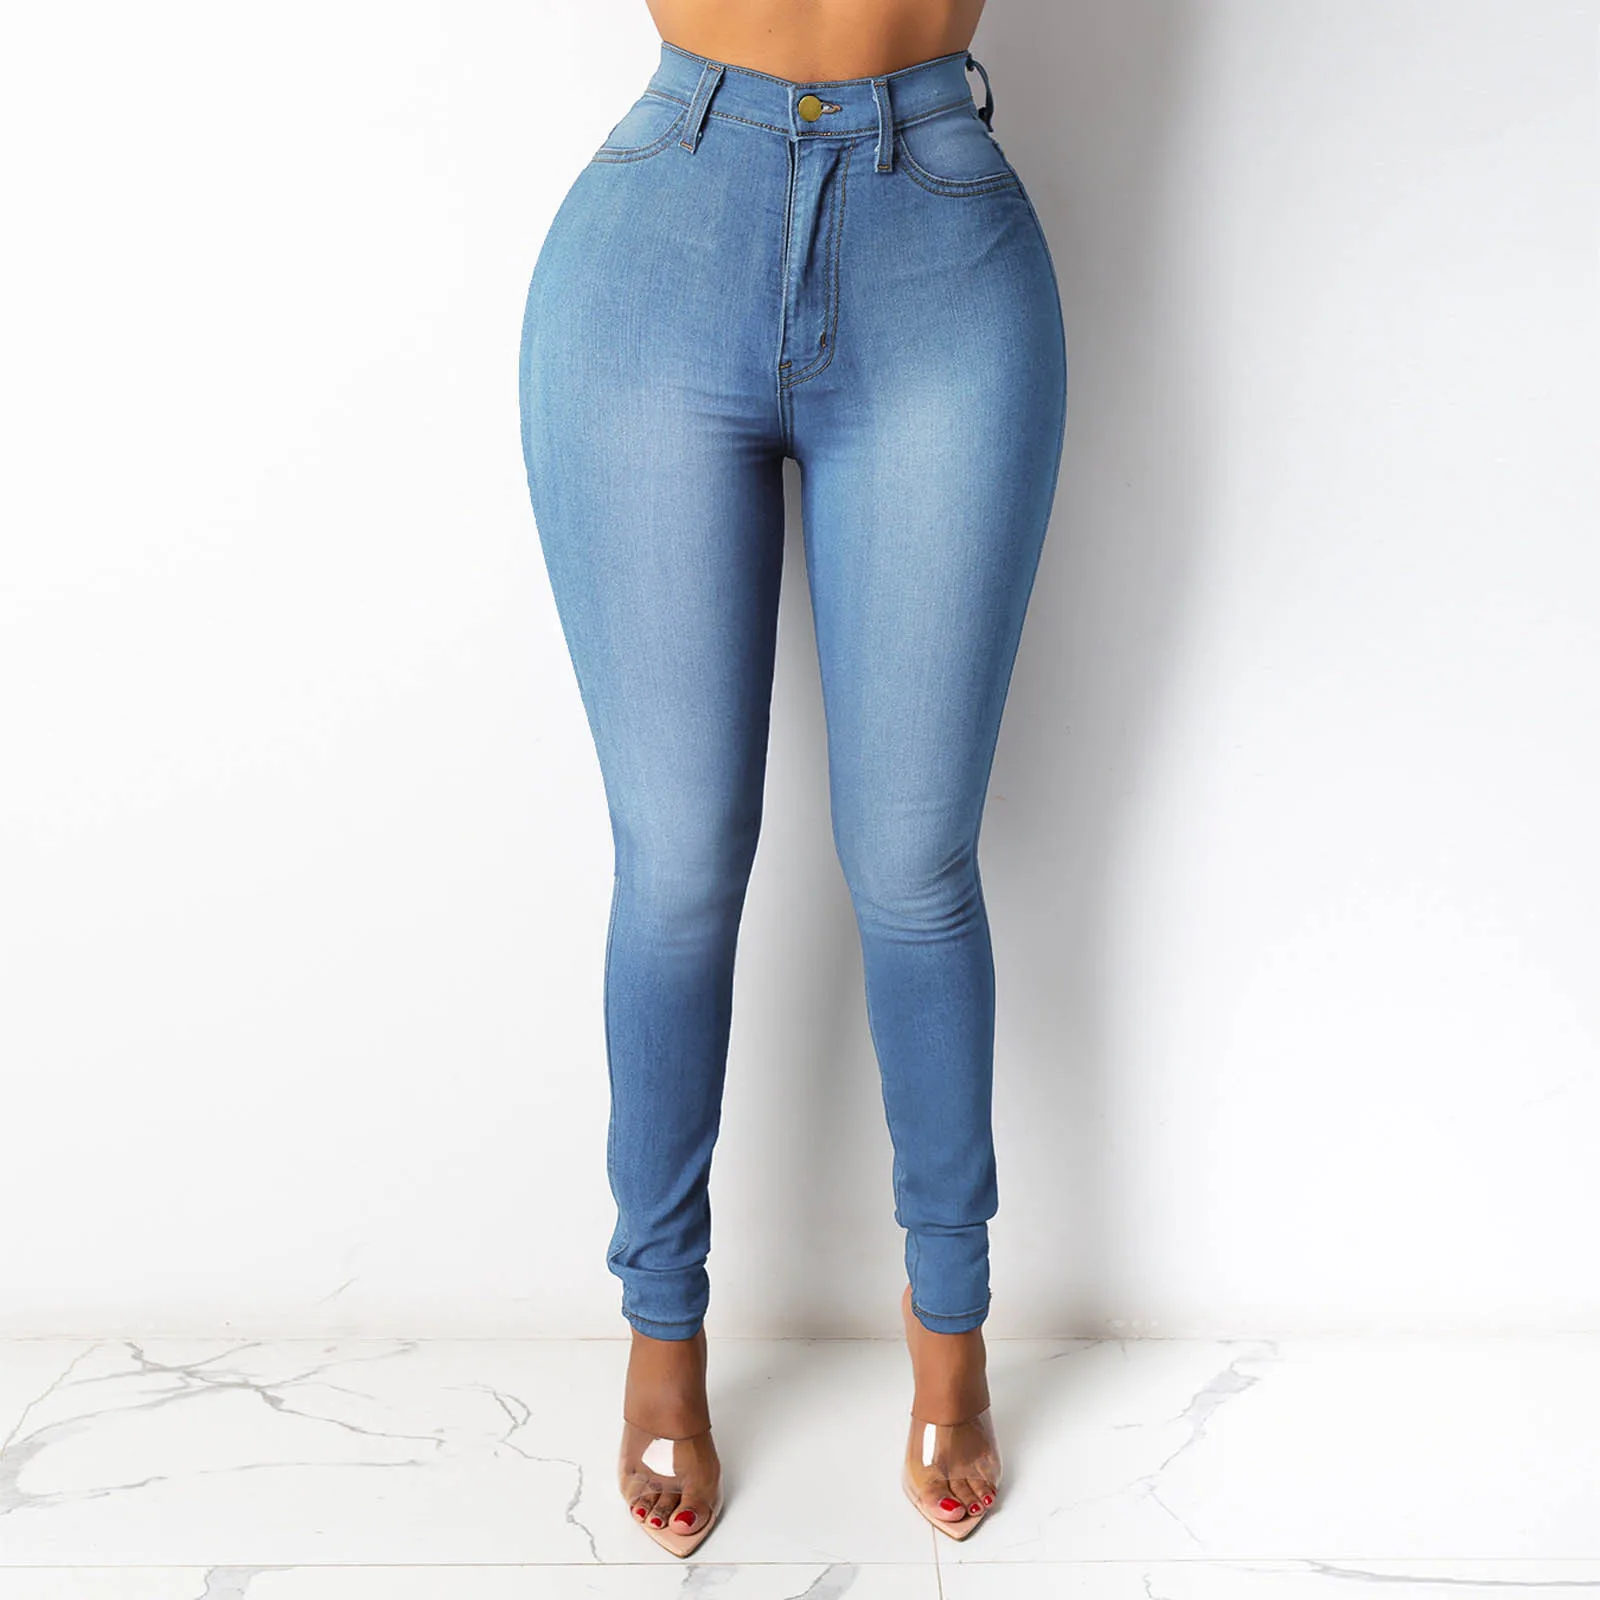 

Женские джинсы со средней талией, облегающие синие джинсы-стрейч в стиле ретро, потертые узкие брюки-карандаш, состаренные джинсы для осени ...